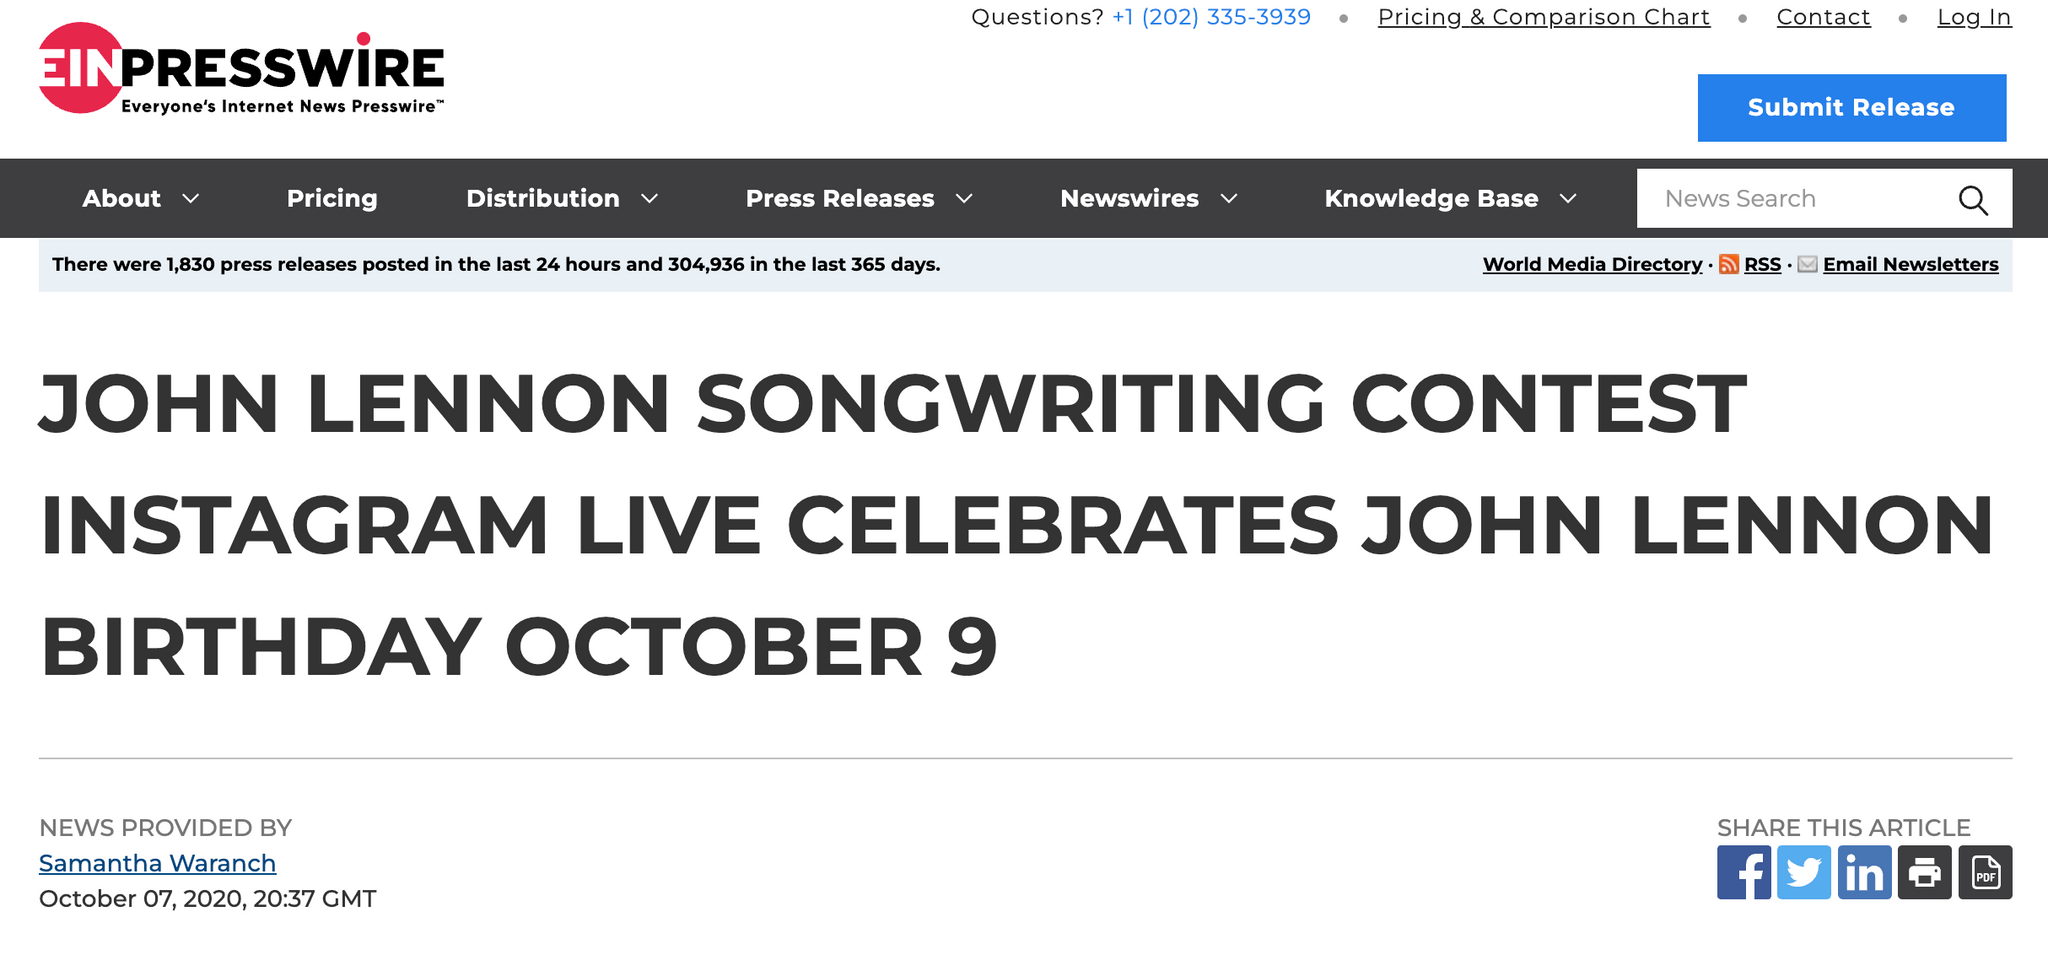 John Lennon Songwriting Contest Instagram Live Celebrates John Lennon Birthday October 9